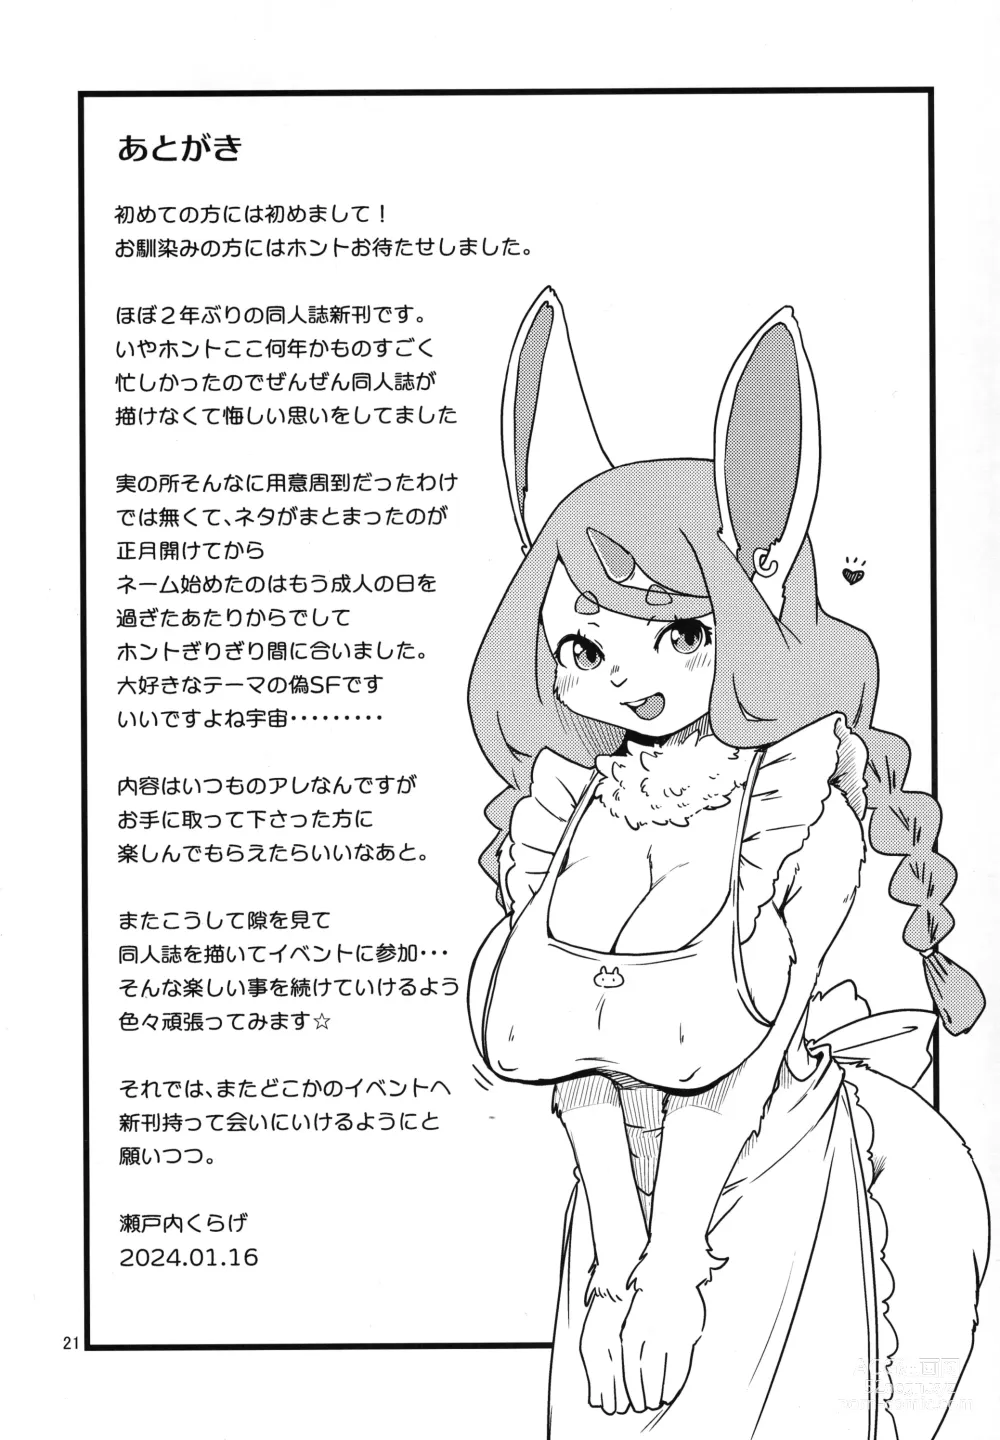 Page 21 of doujinshi Mofumofu Invasion